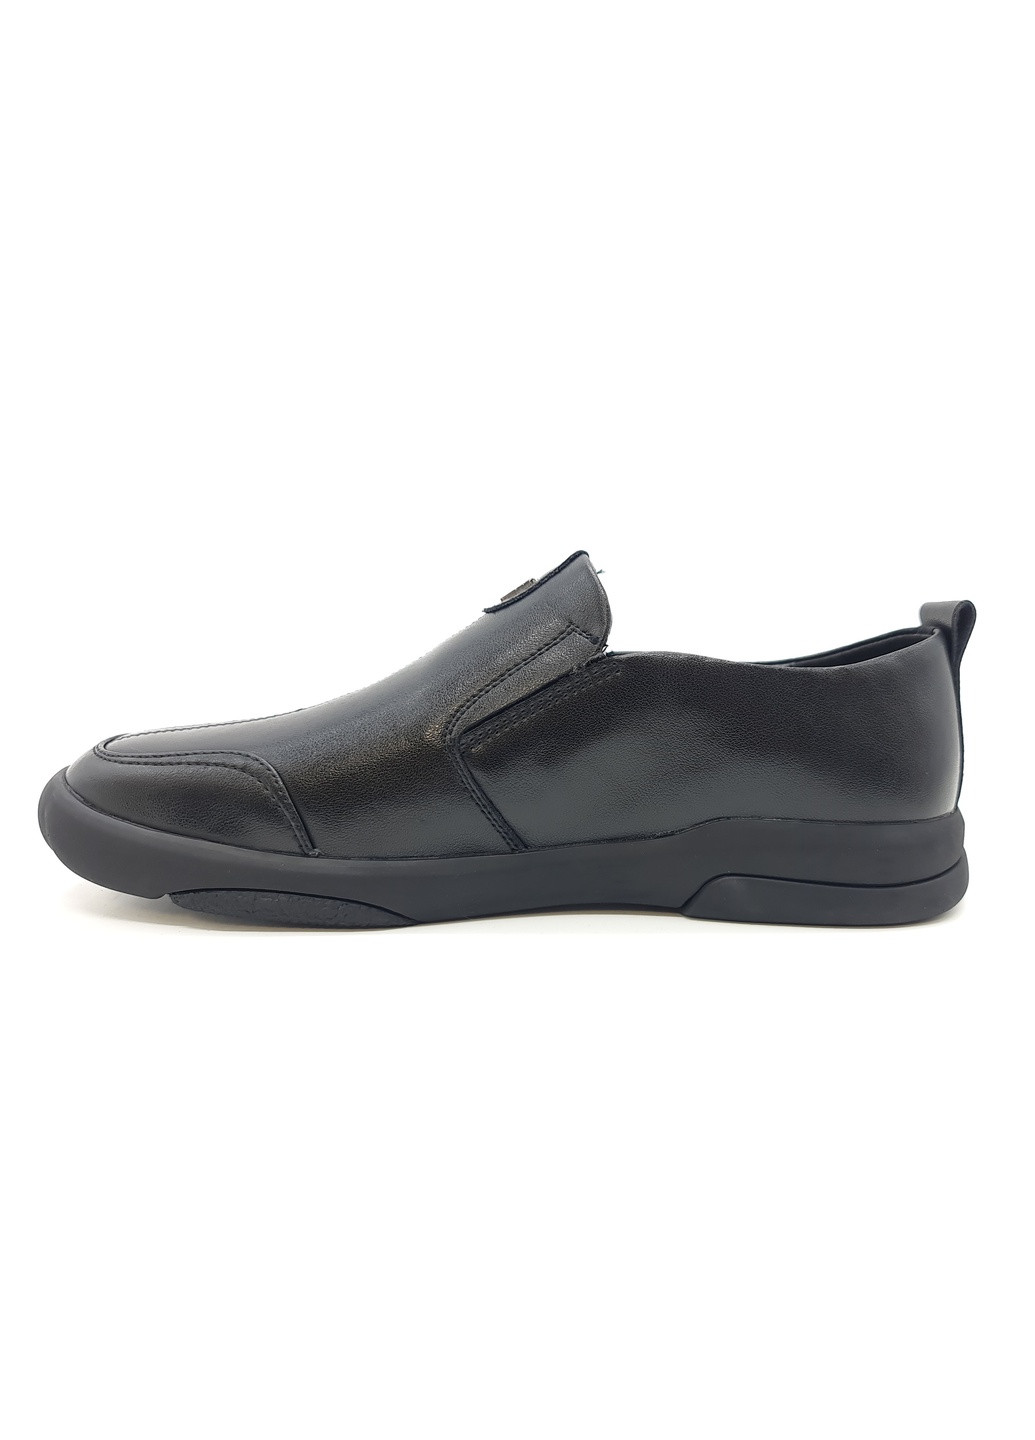 Чоловічі туфлі чорні шкіряні YA-11-16 26 см (р) Yalasou (259326273)